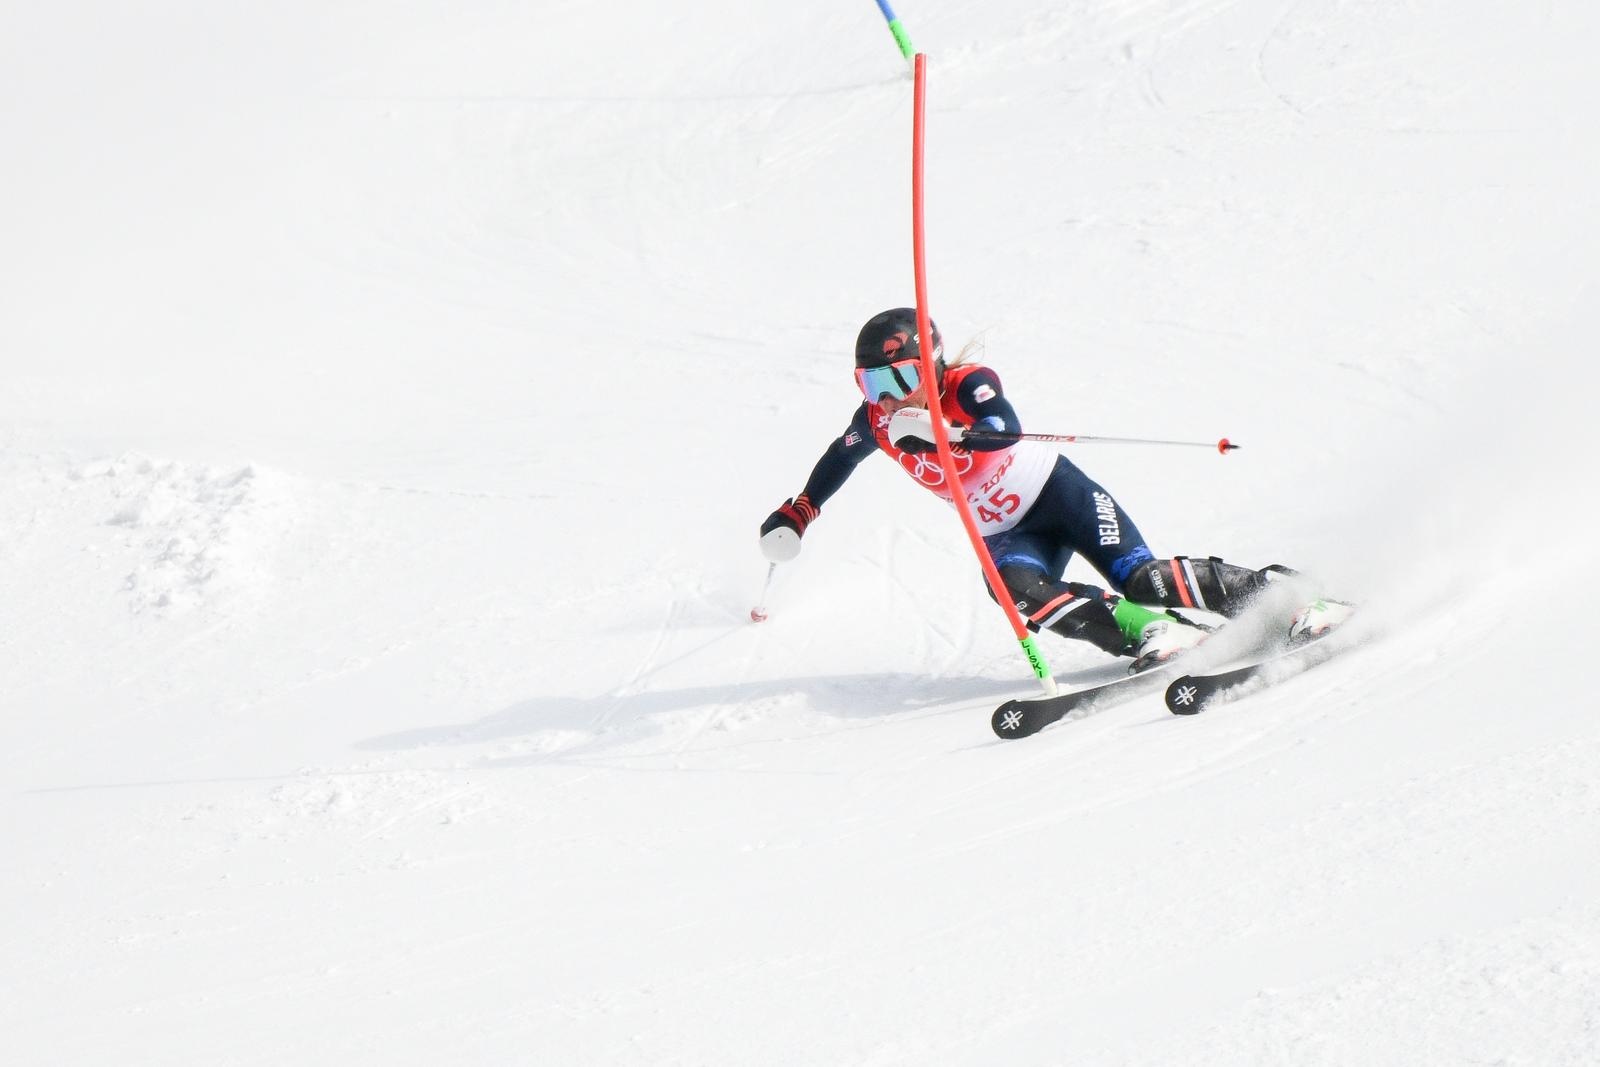 09.02.2022., Peking, Kina - Zimske olimpijske igre 2022. Slalom, druga voznja. Zrinka Ljutic   Photo: Jaki Franja/PIXSELL